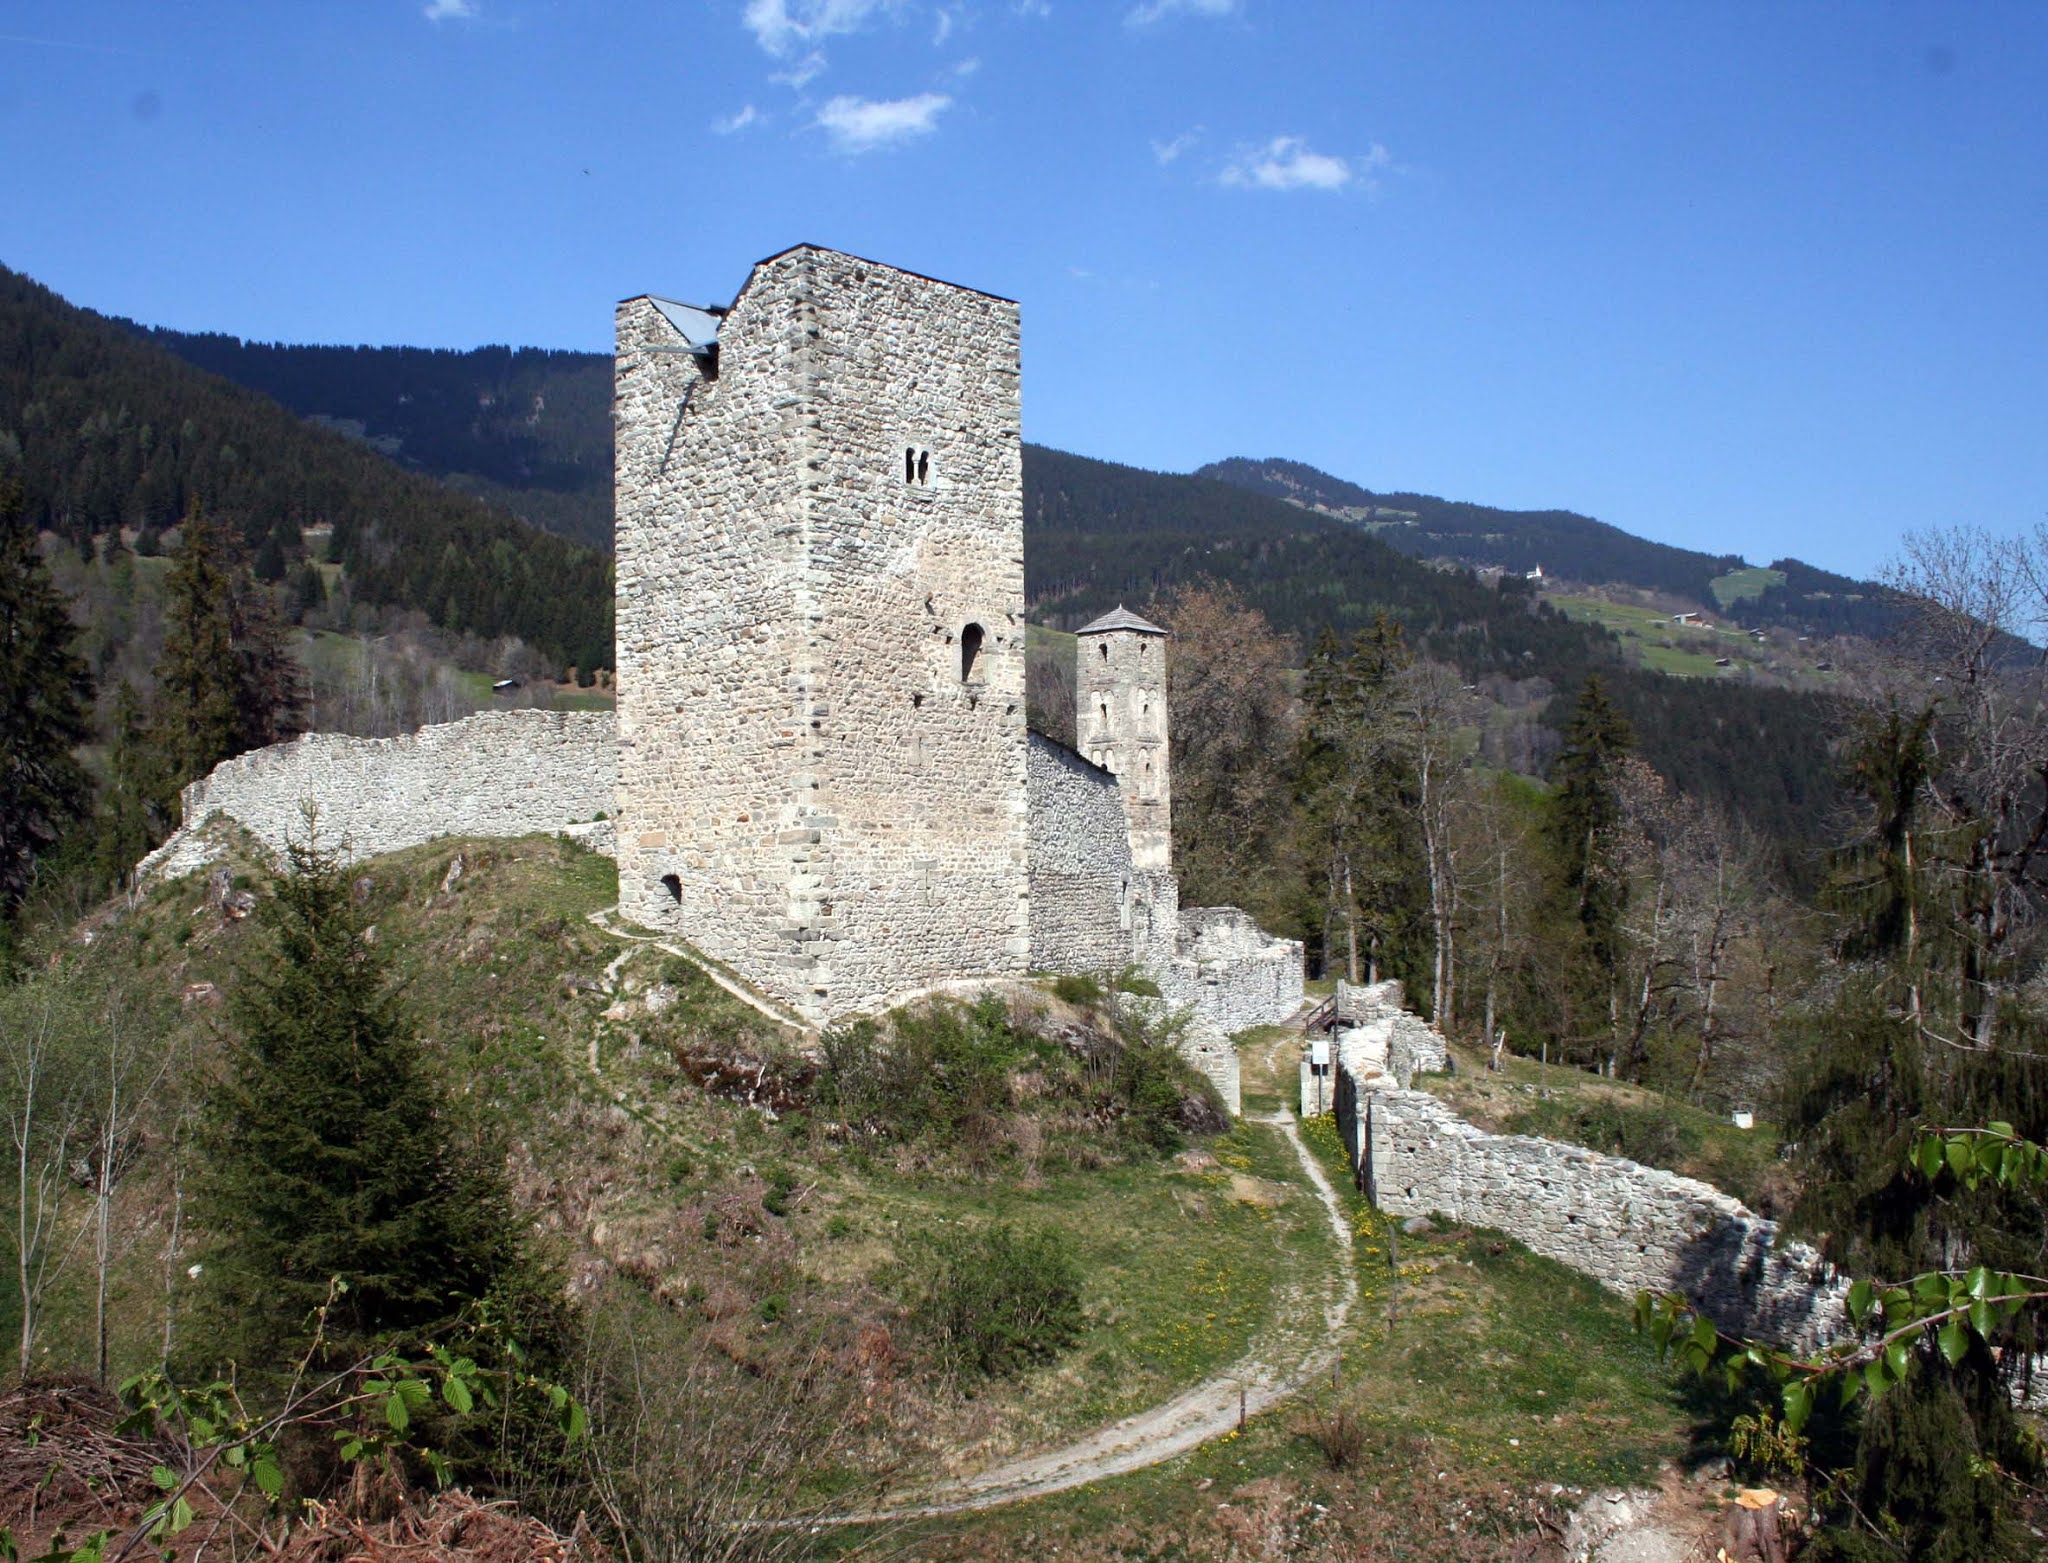 Jörgenberg Castle